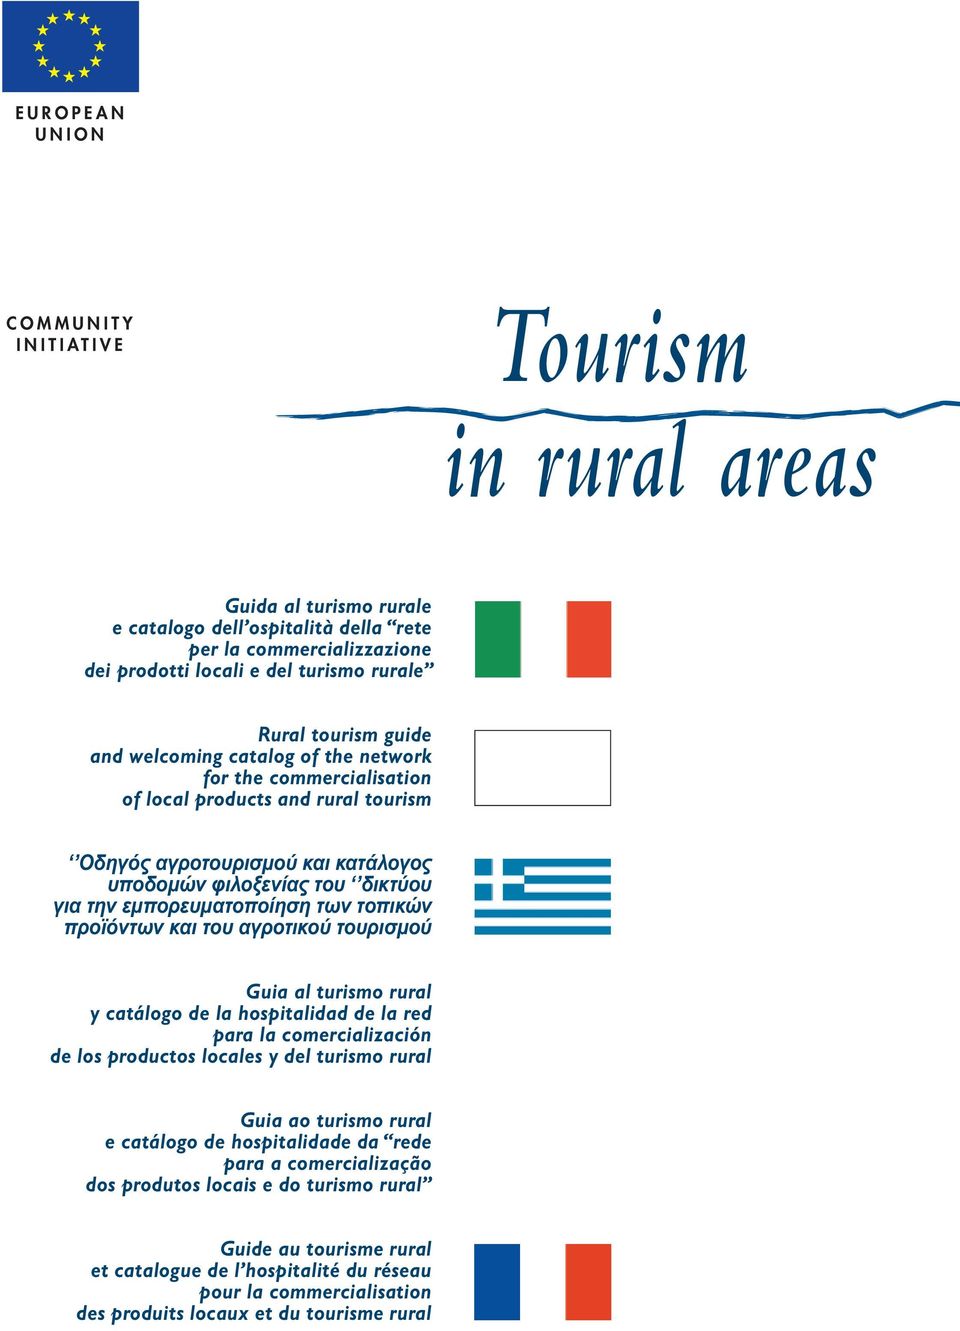 δικτύου για την εµπορευµατοποίηση των τοπικών προϊόντων και του αγροτικού τουρισµού Guia al turismo rural y catálogo de la hospitalidad de la red para la comercialización de los productos locales y